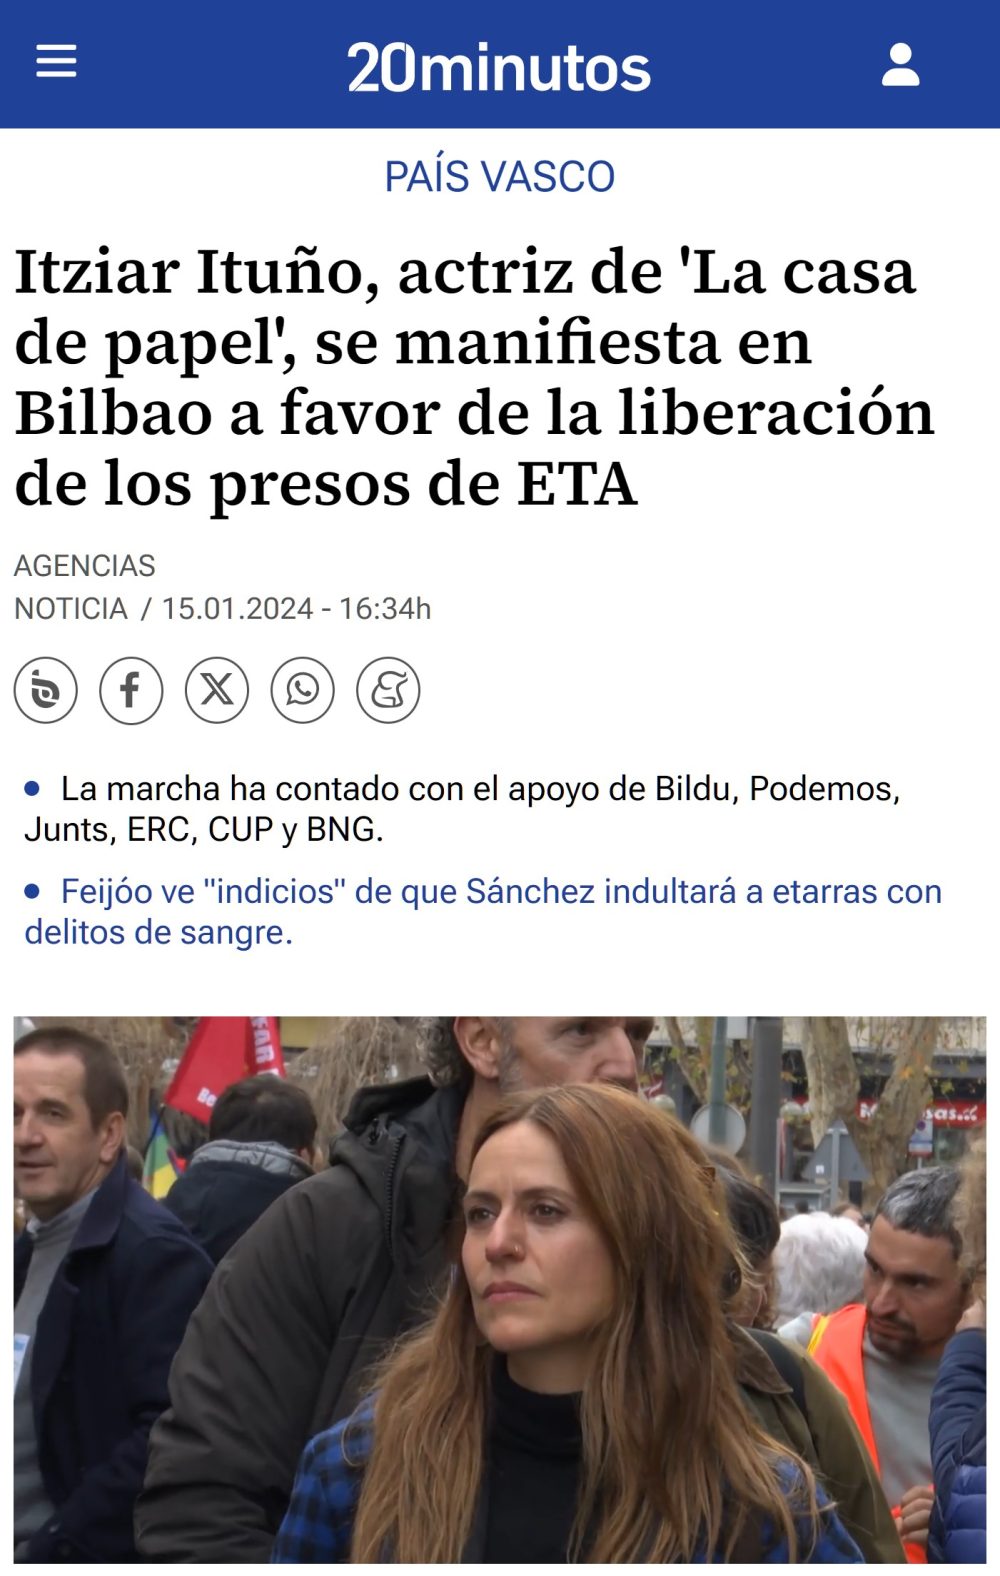 El concesionario 'BMW Lurauto' cesa a Itziar Ituño, la actriz que encabezó la marcha de Bilbao por la liberación de los presos de la banda terrorista ETA, después del boicot en redes sociales contra BMW.